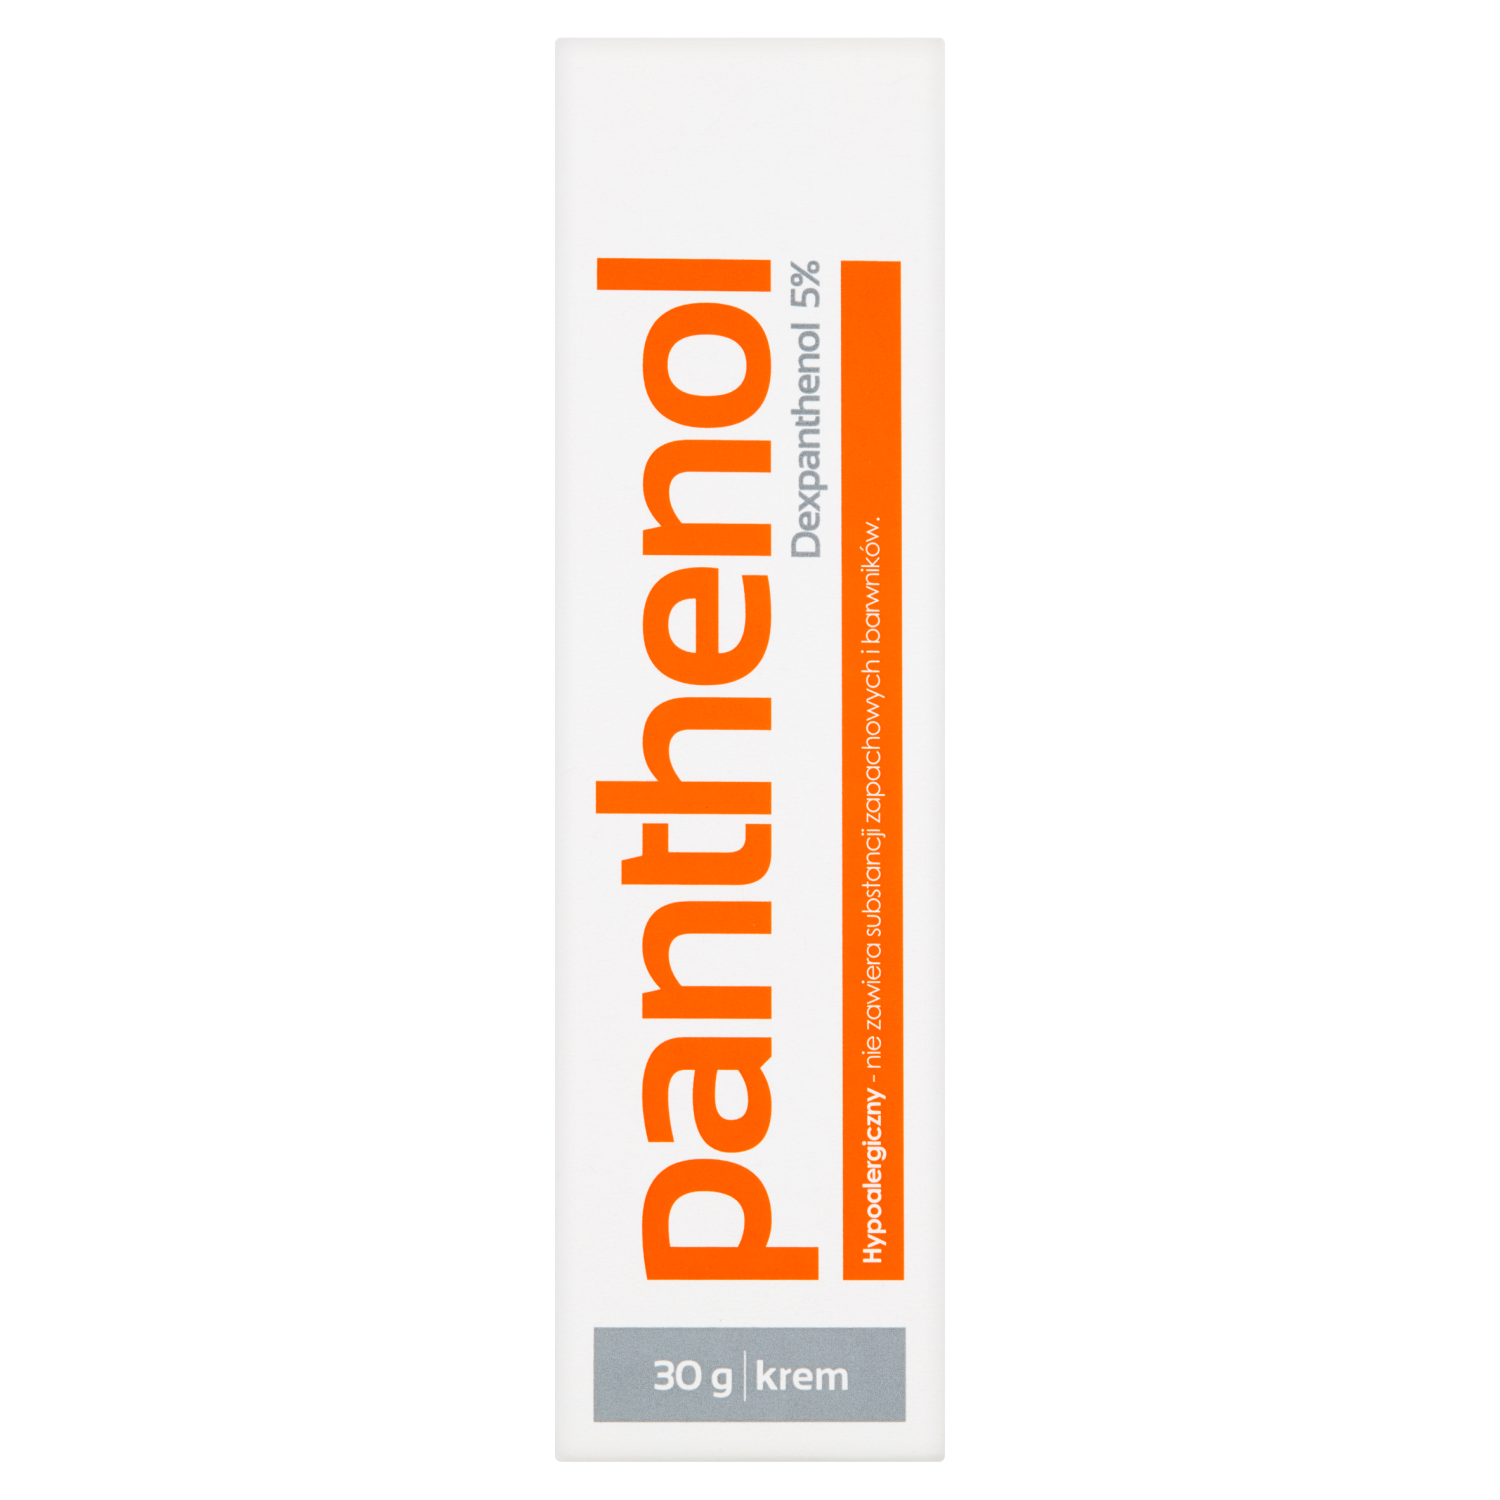 Panthenol Dexpanthenol 5% регенерирующий успокаивающий крем, 30 г